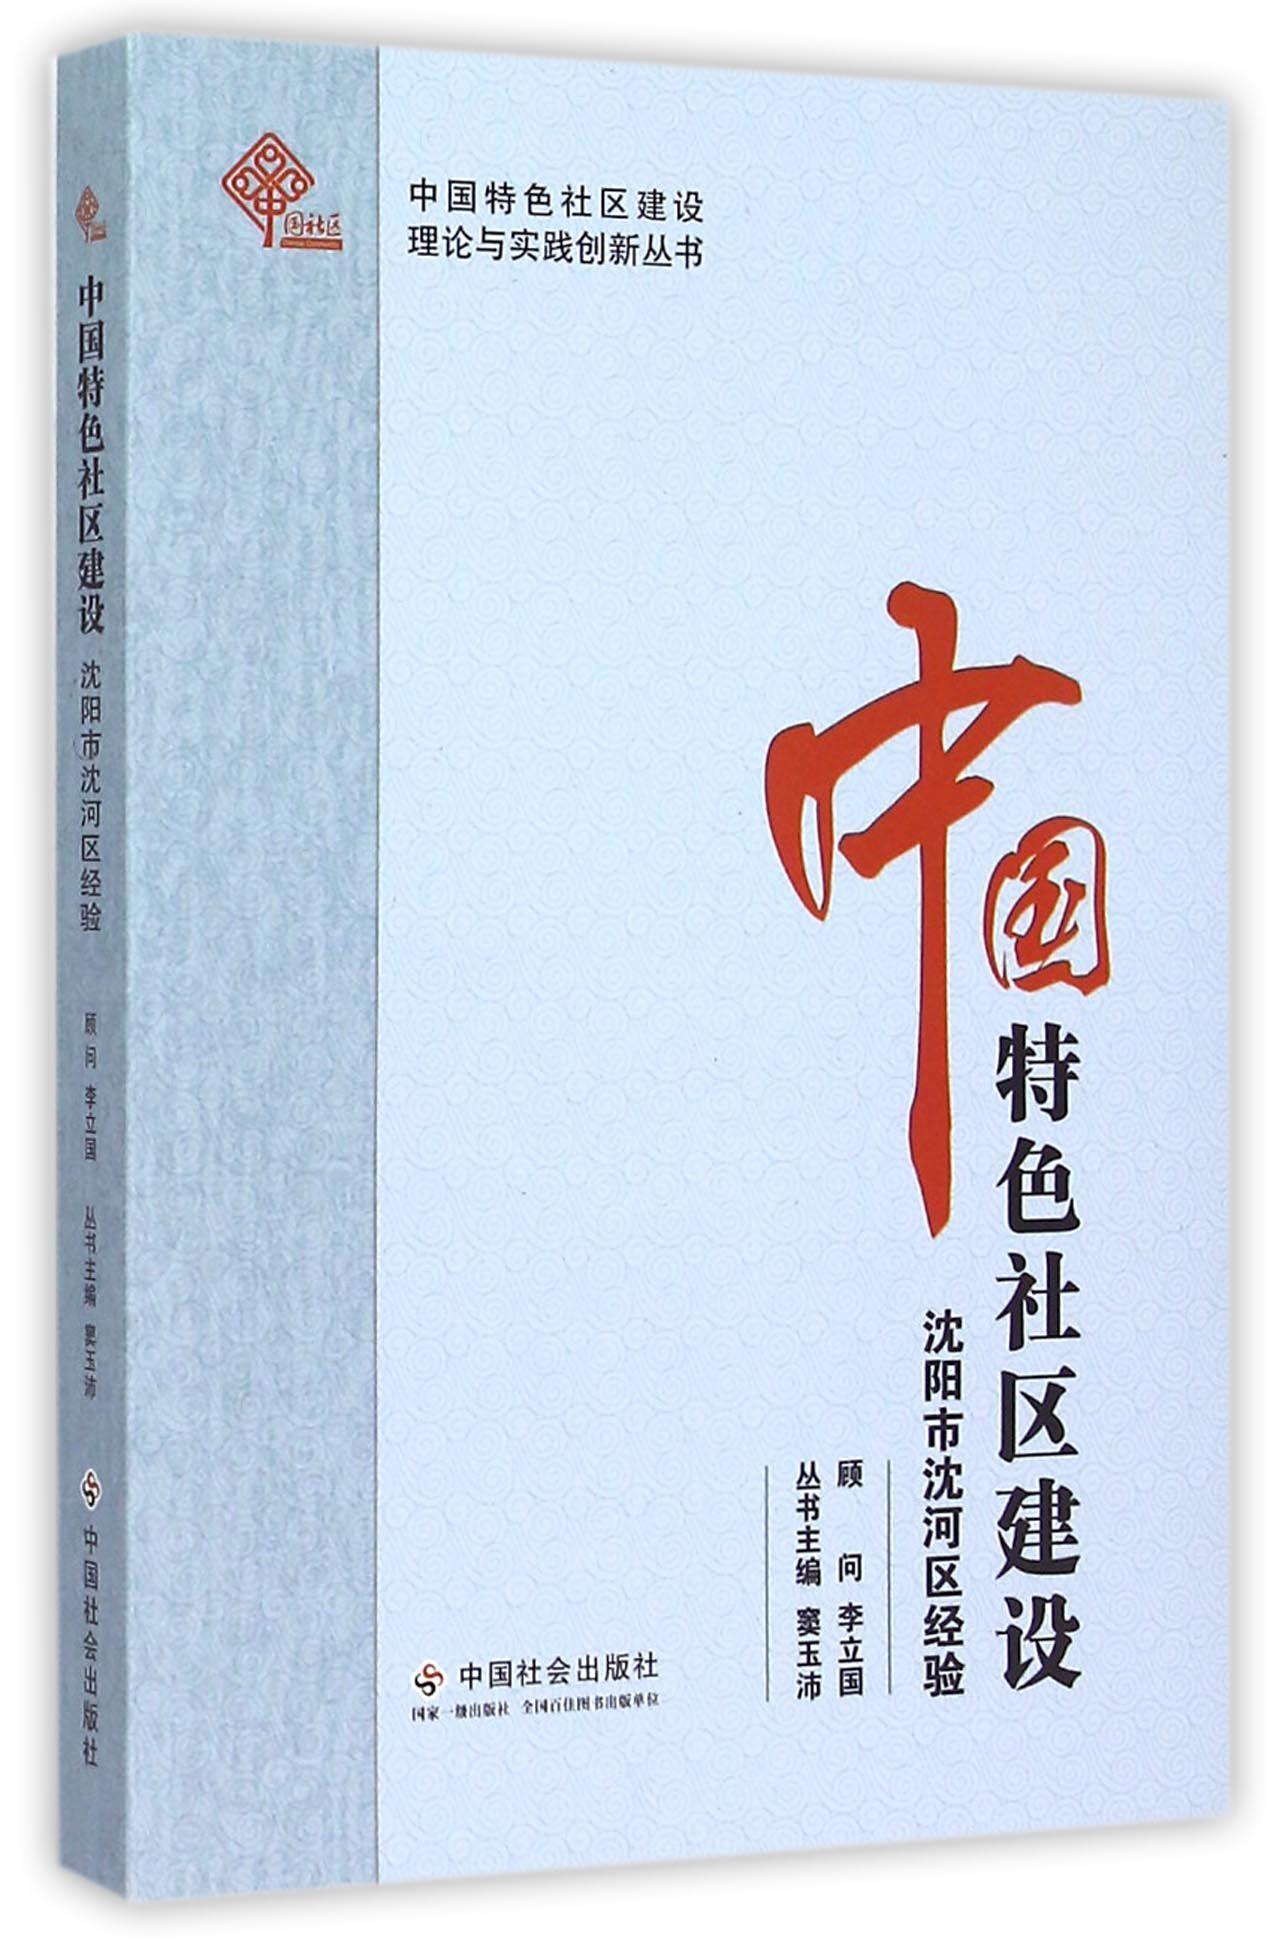 中国社区建设:沈阳市沈河区经验 中国社会出版社 9787508750477 社会科学 书籍